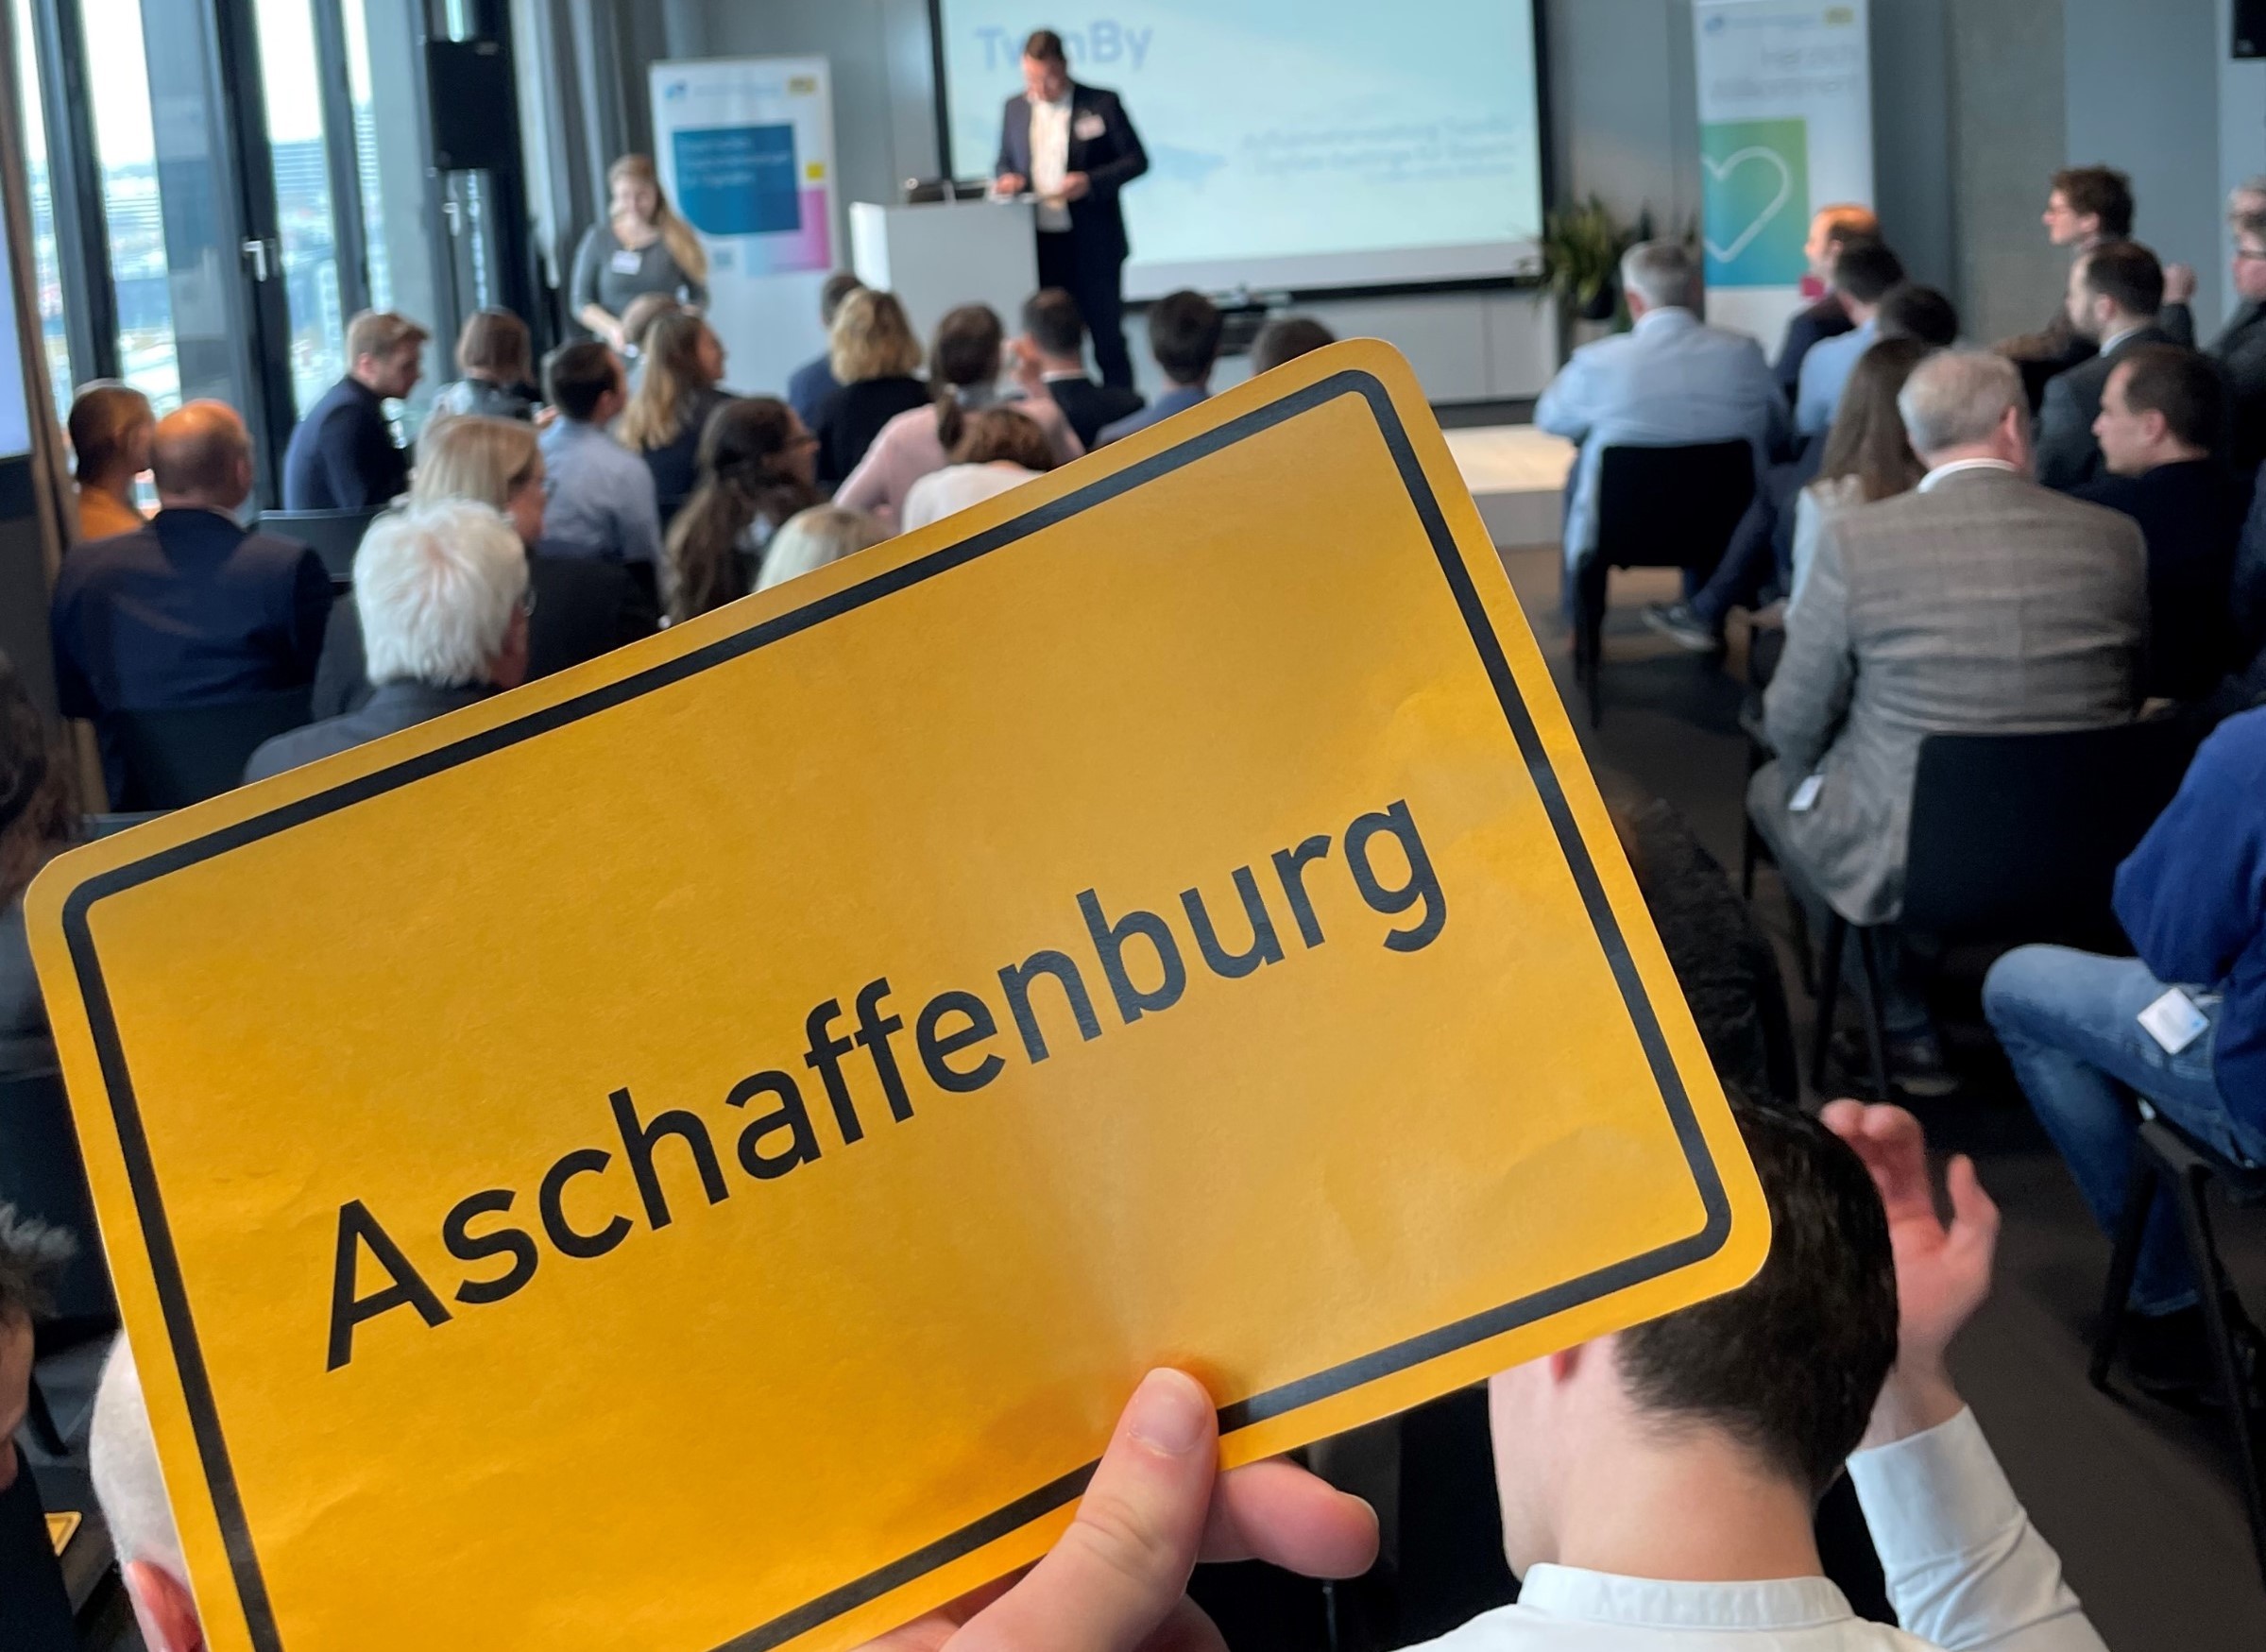 Auftaktveranstaltung TwinBy - Schild Aschaffenburg wird hochgehalten